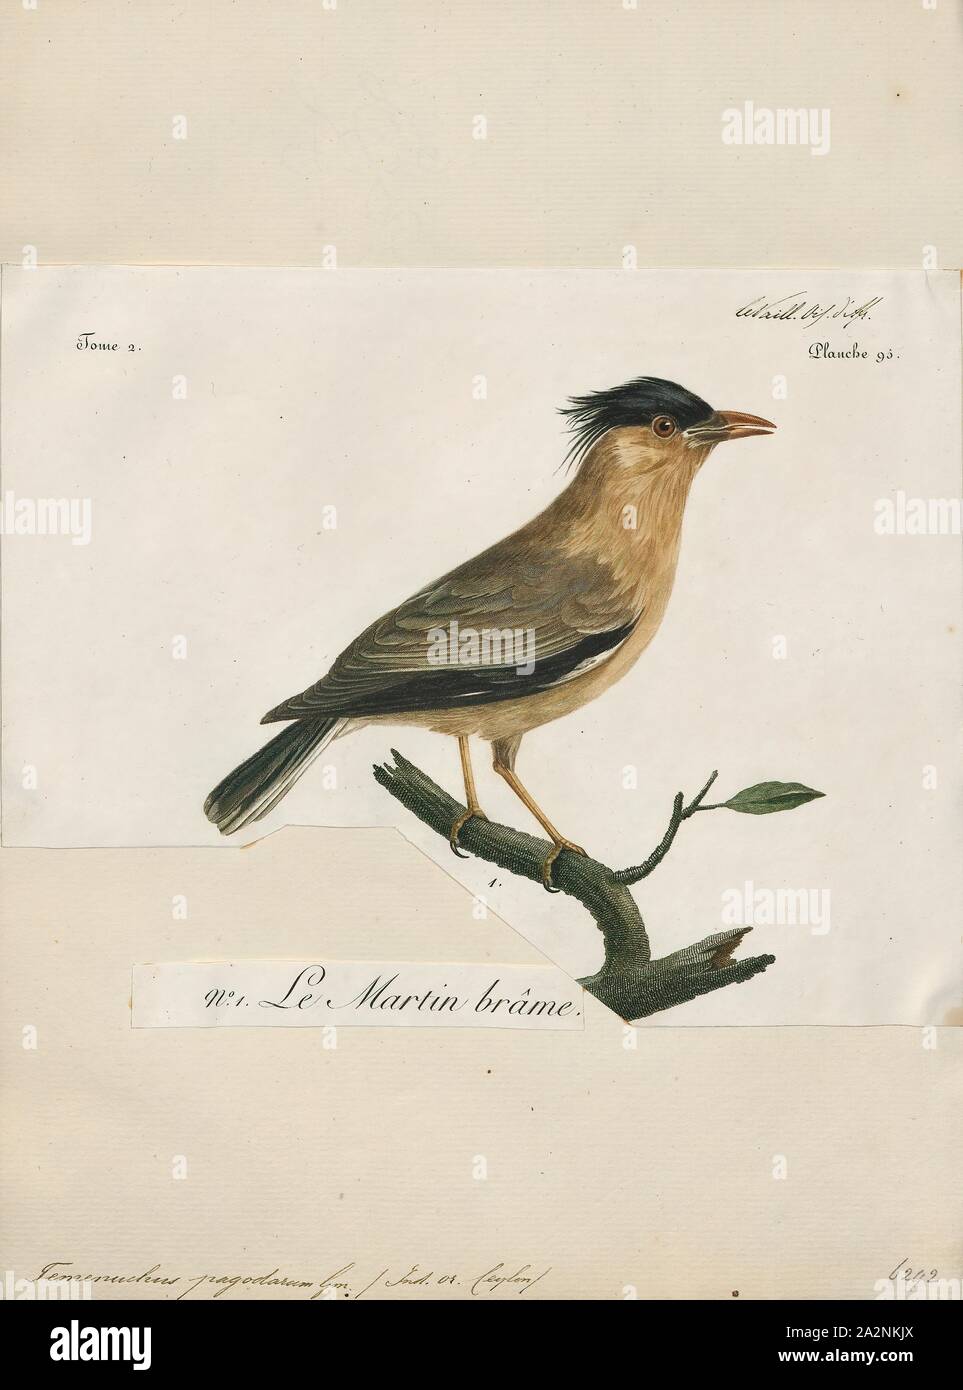 Temenuchus pagodarum brahminy, Imprimer, l'myna ou brahminy starling (Sturnia pagodarum) est un membre de la famille de starling oiseaux. Il se tient généralement en couples ou en petites bandes dans les habitats ouverts sur les plaines du sous-continent indien, 1796-1808. Banque D'Images